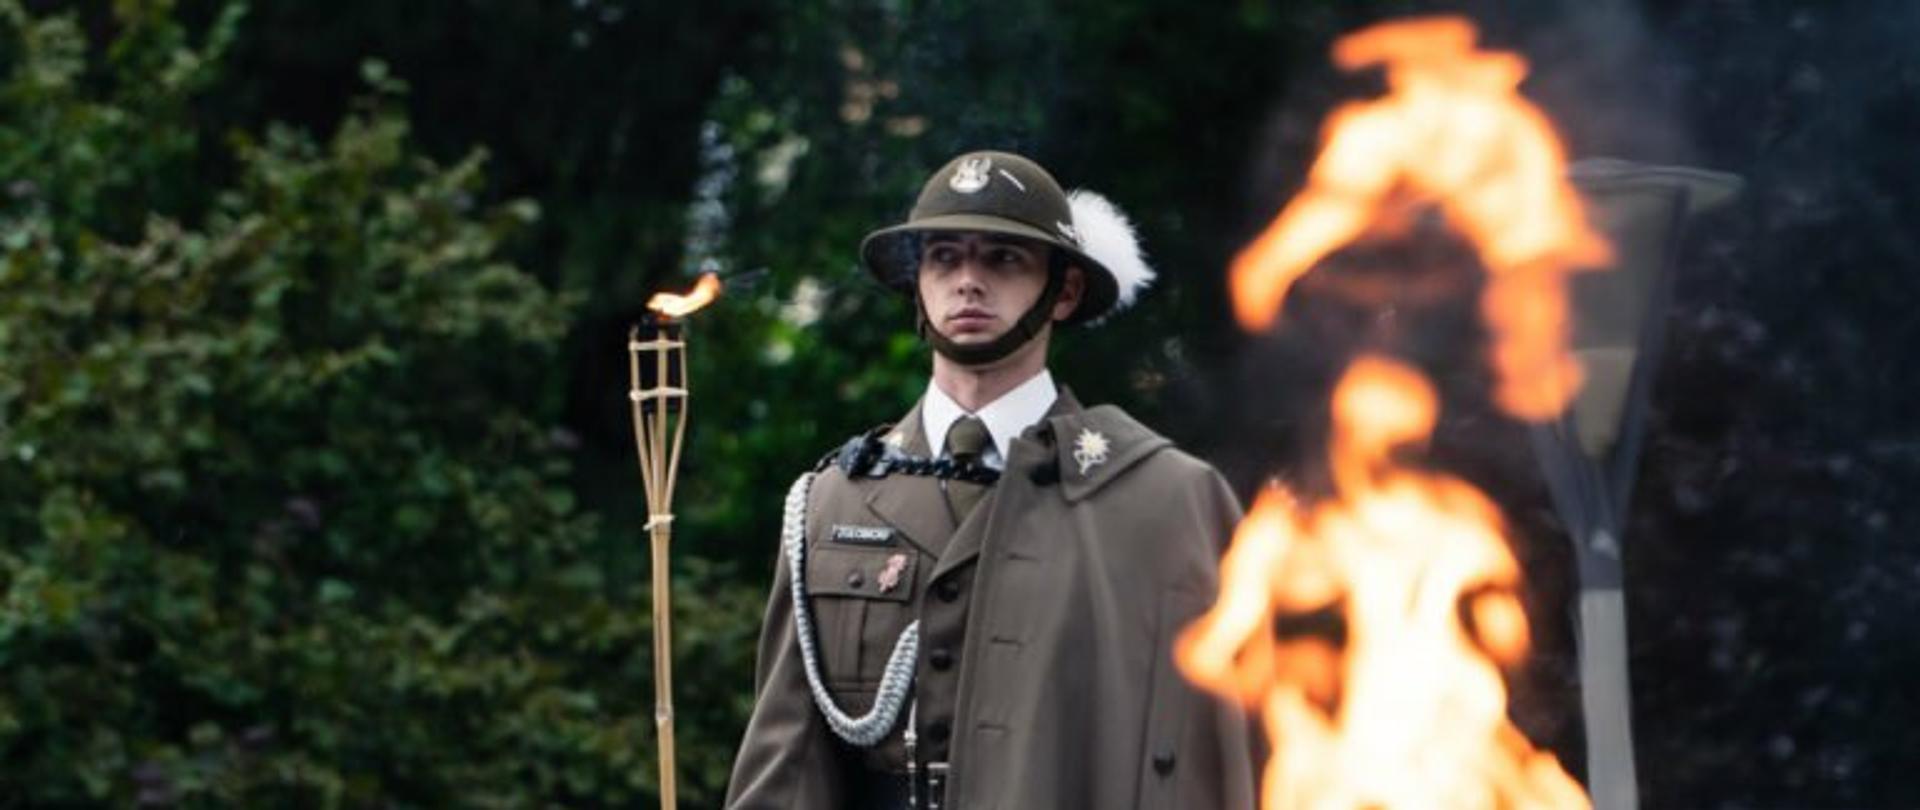 Żołnierz z płonąca pochodnią podczas obchodów rocznicy wybuchu II wojny światowej